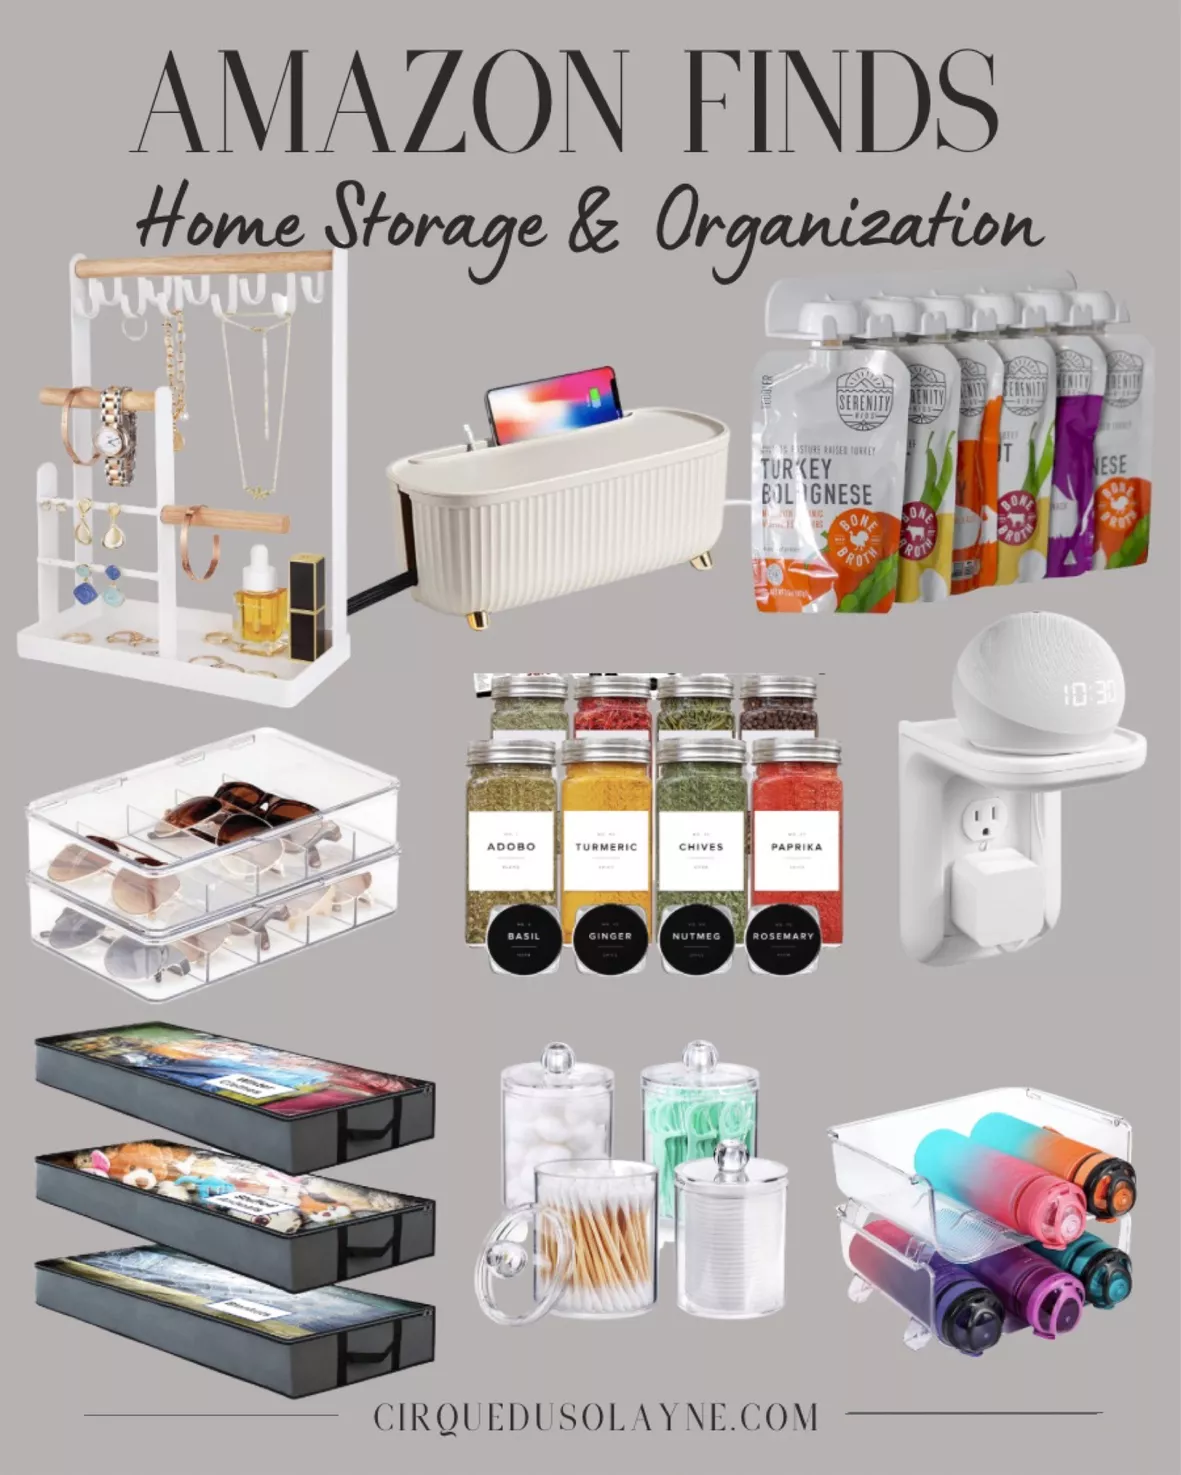 Home Storage & Organization 